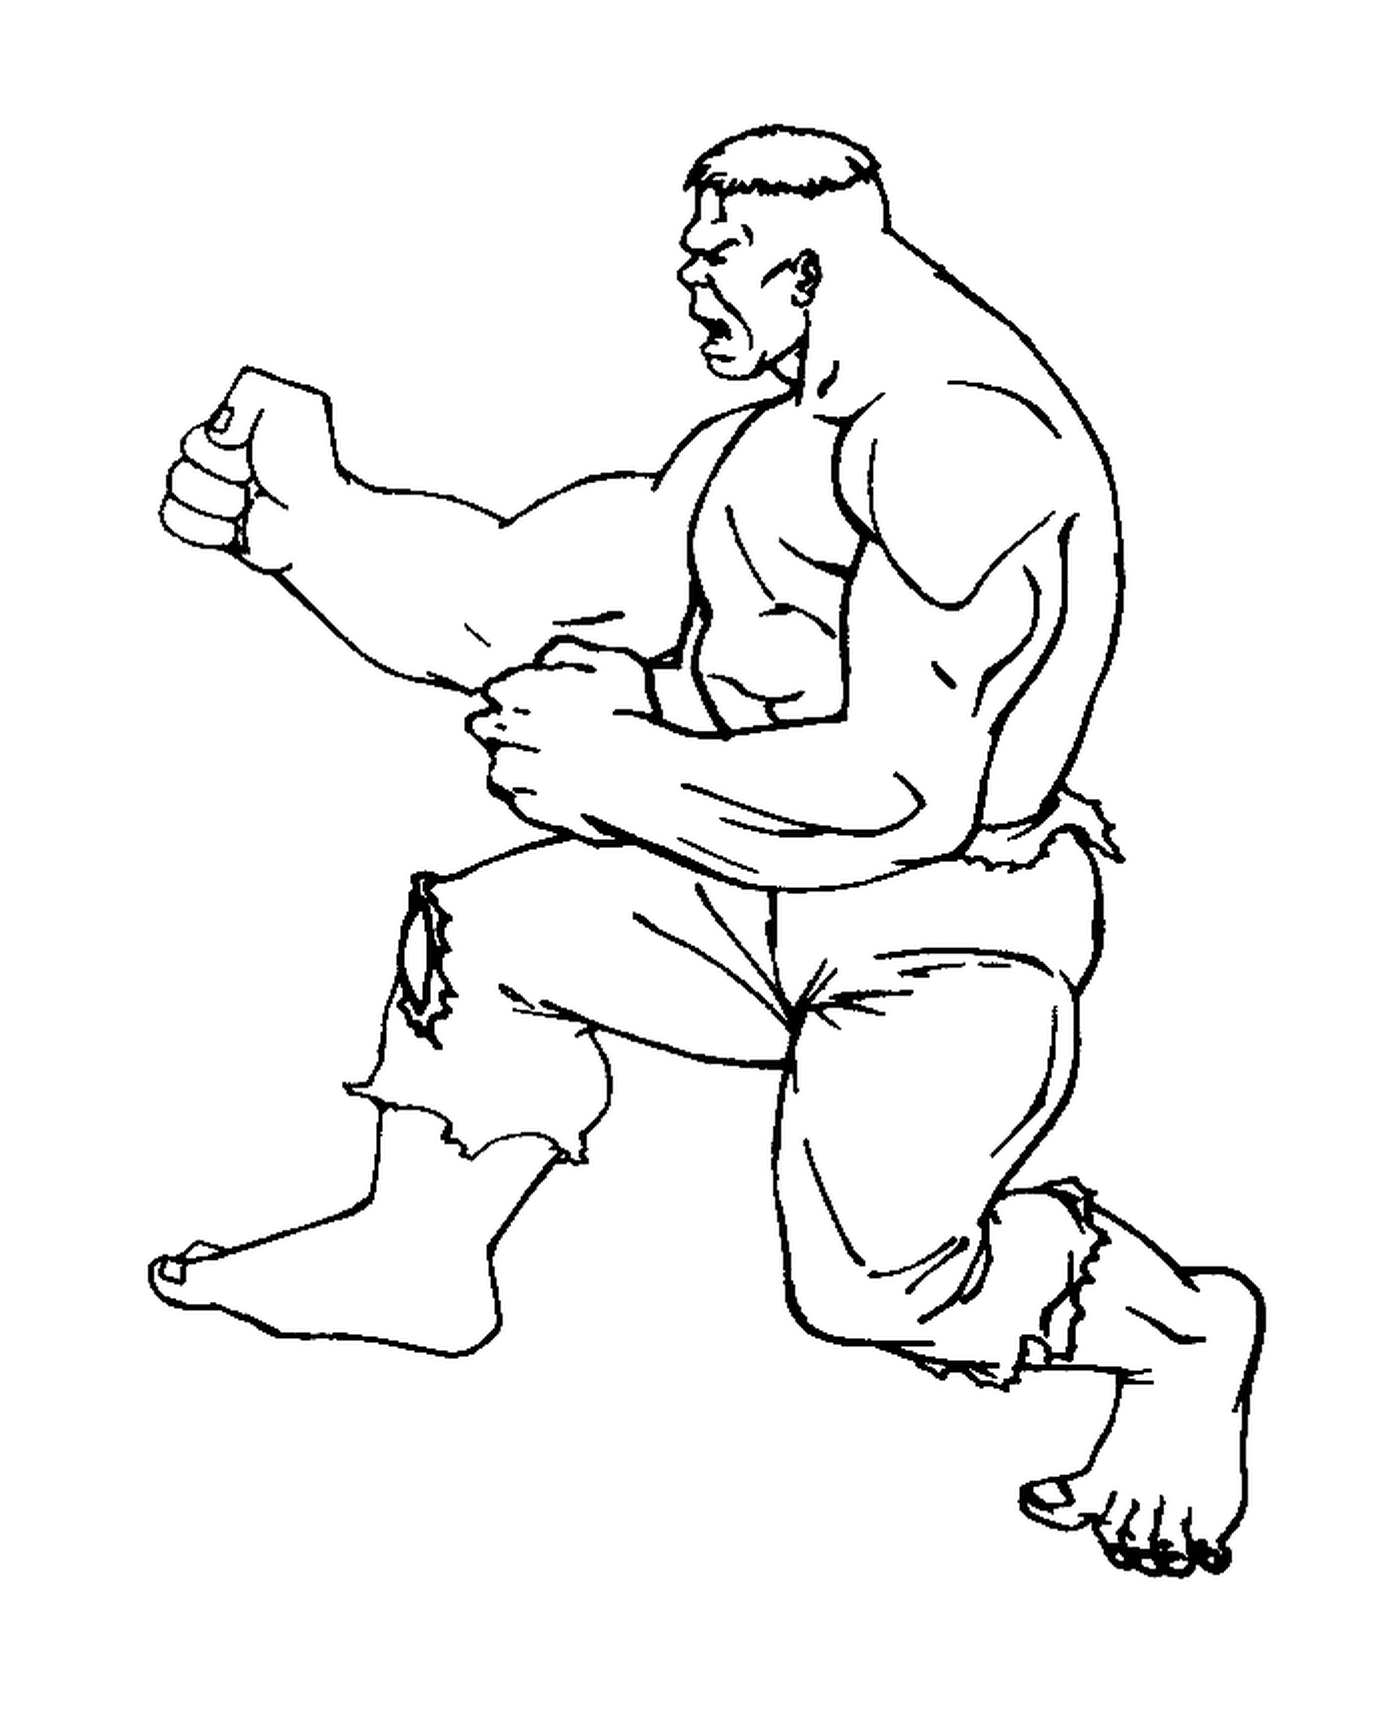   Hulk pratiquant le karaté 